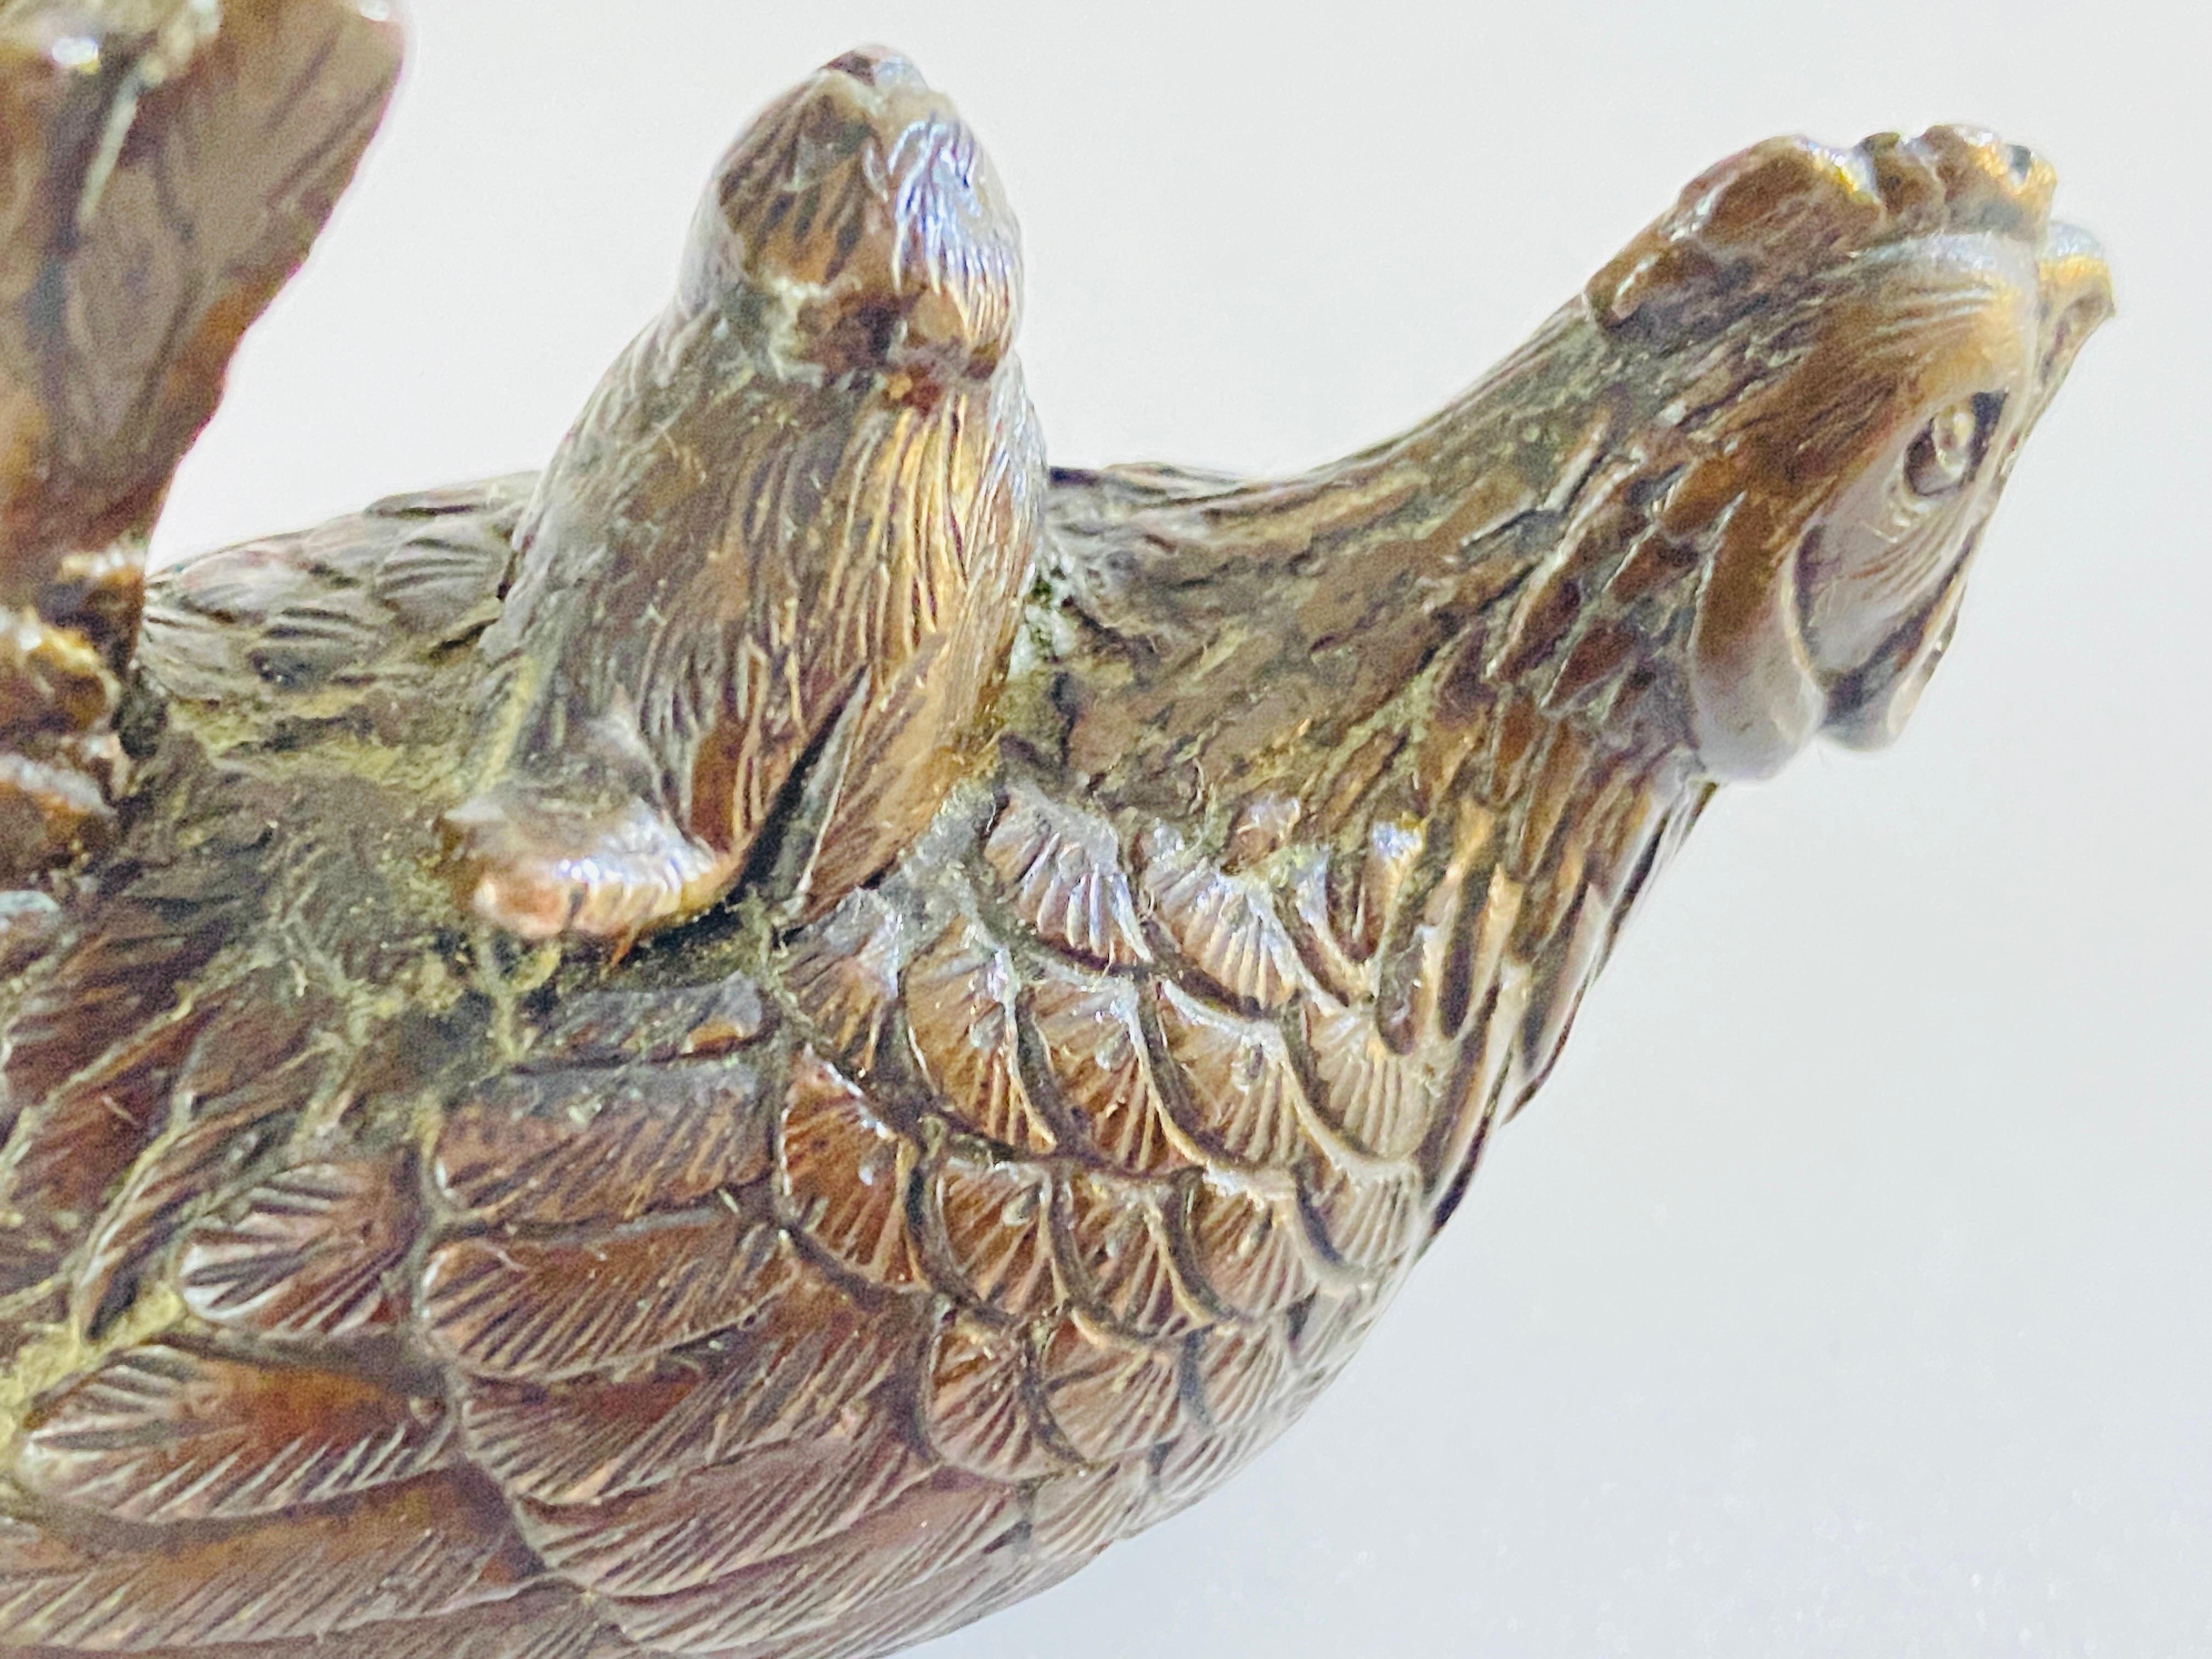 Ensemble de 3 bronzes représentant un chat, une poule et des oiseaux. Les objets sont en bronze. Ces bronzes ont été fabriqués en France dans les années 1900, ce sont des objets typiques de cette période.